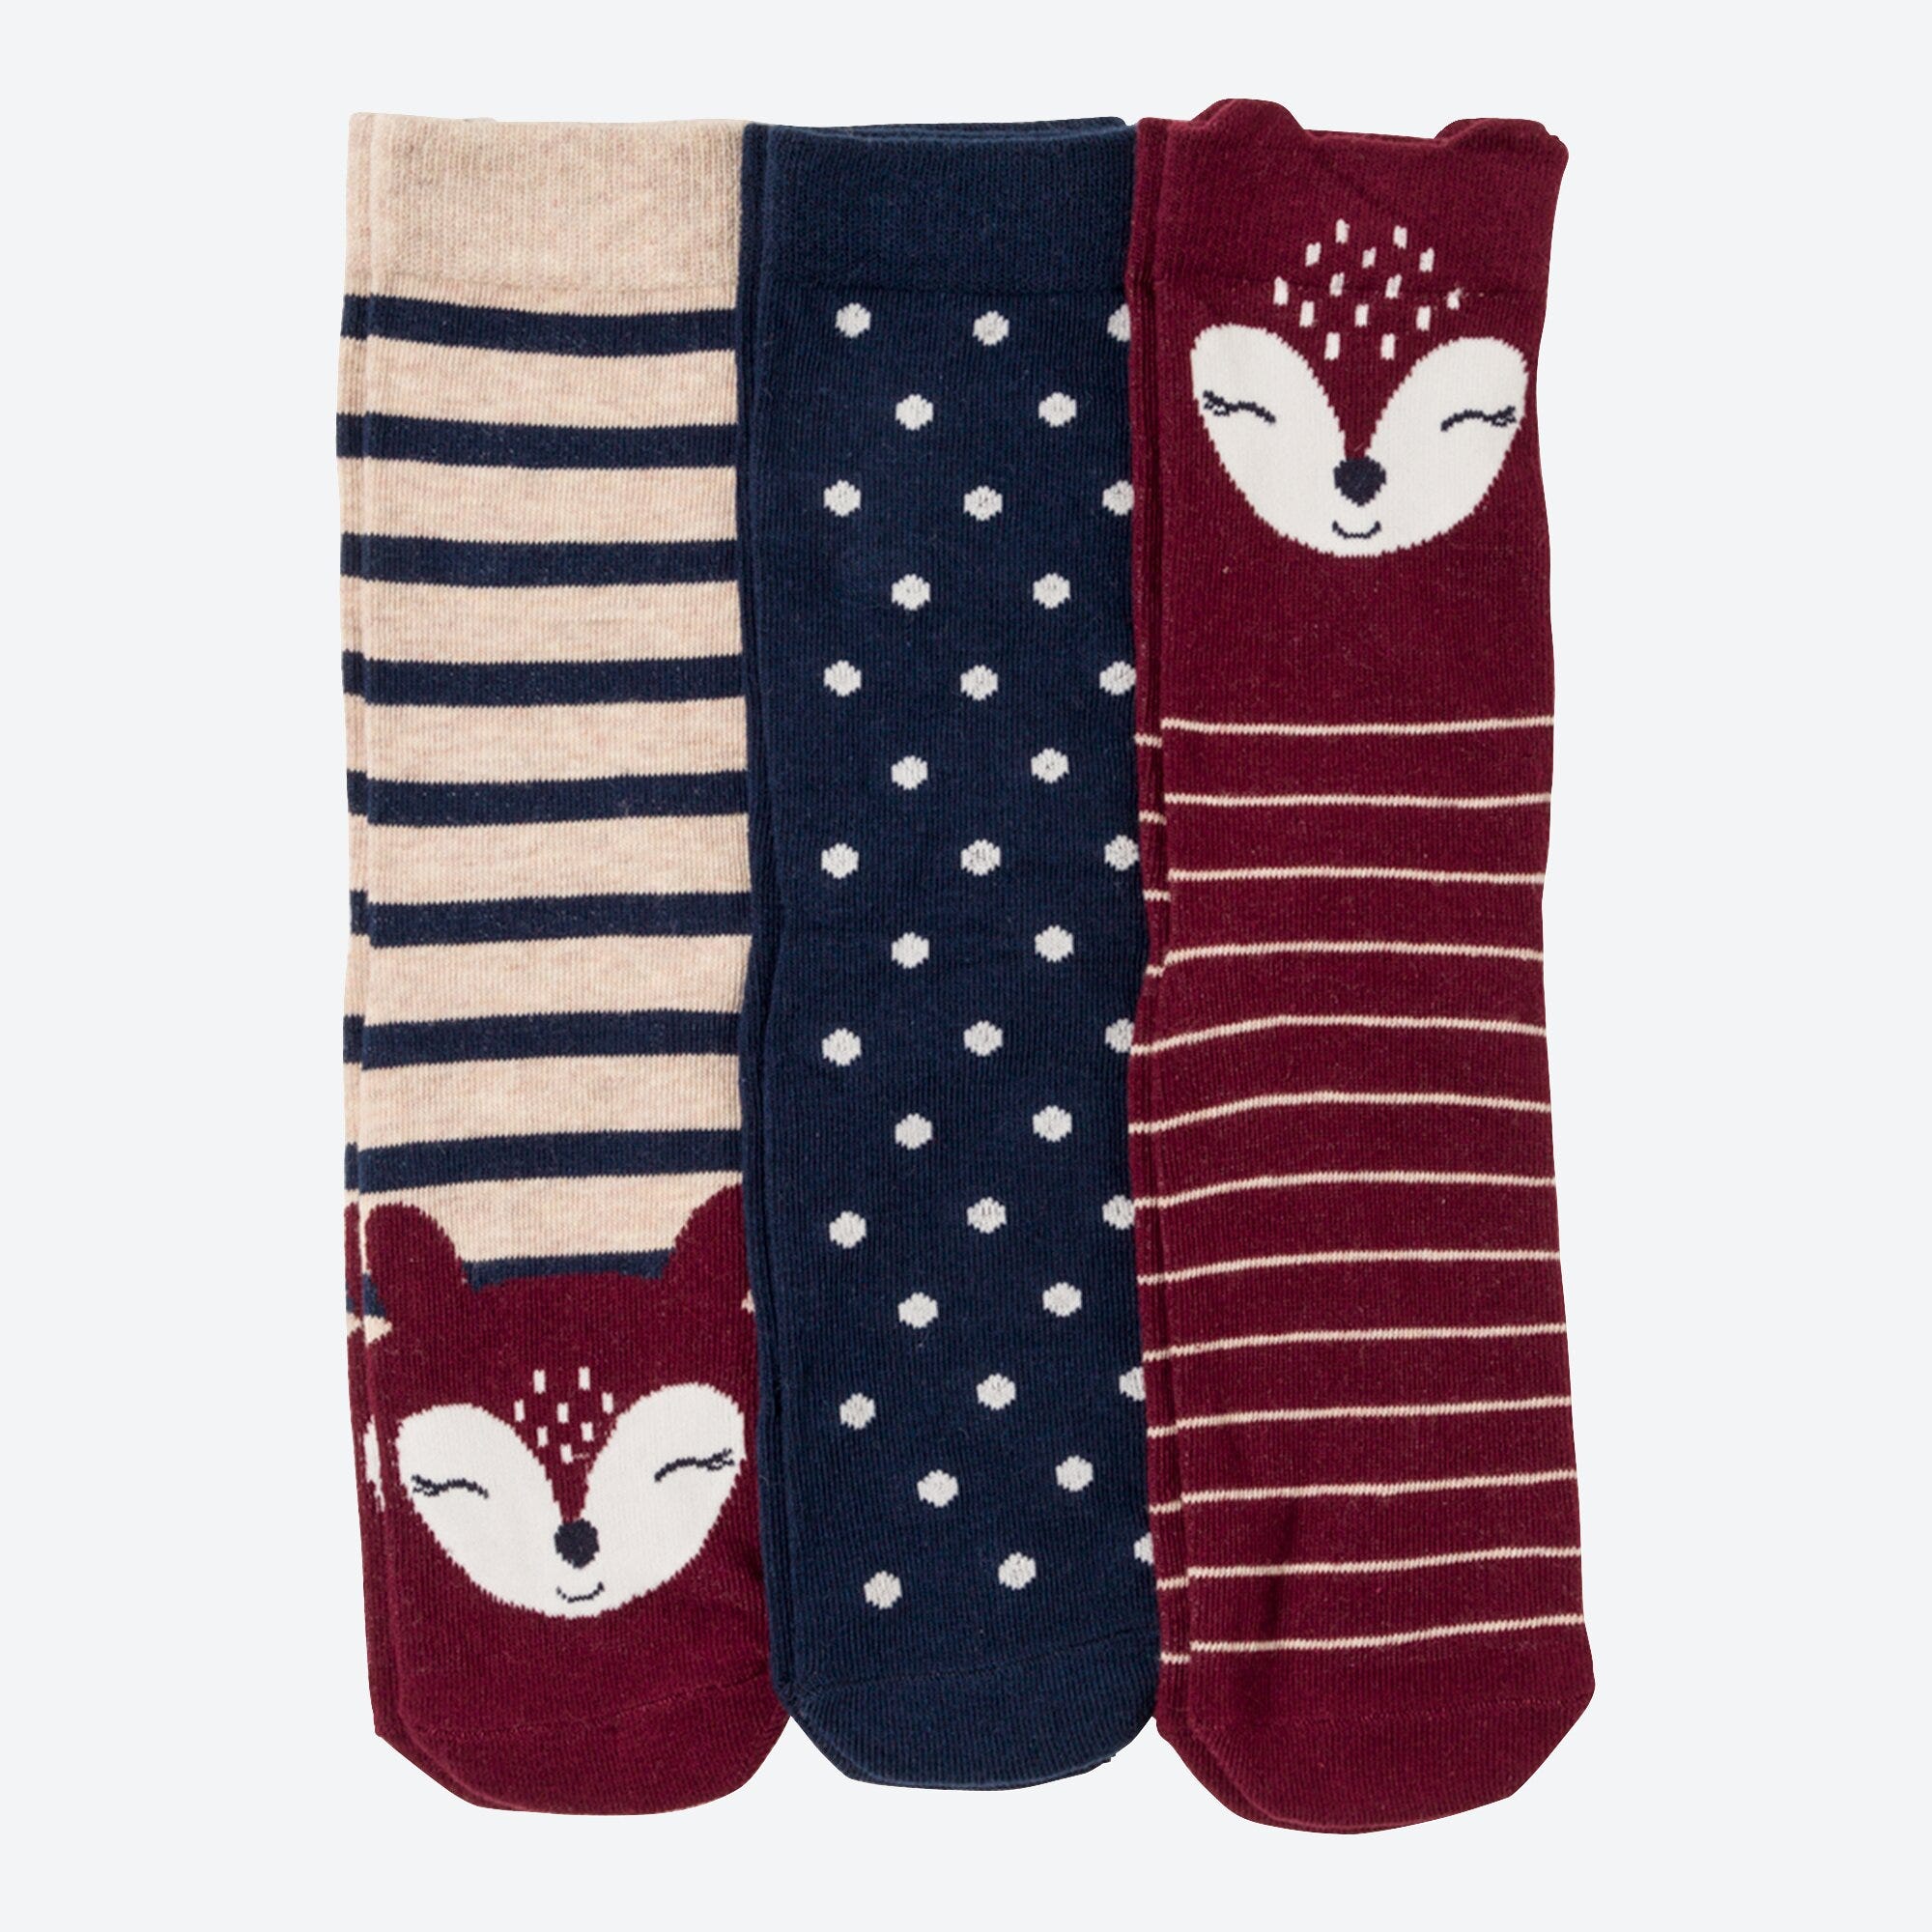 Damen-Socken in verschiedenen Farbkombinationen, 3er-Pack